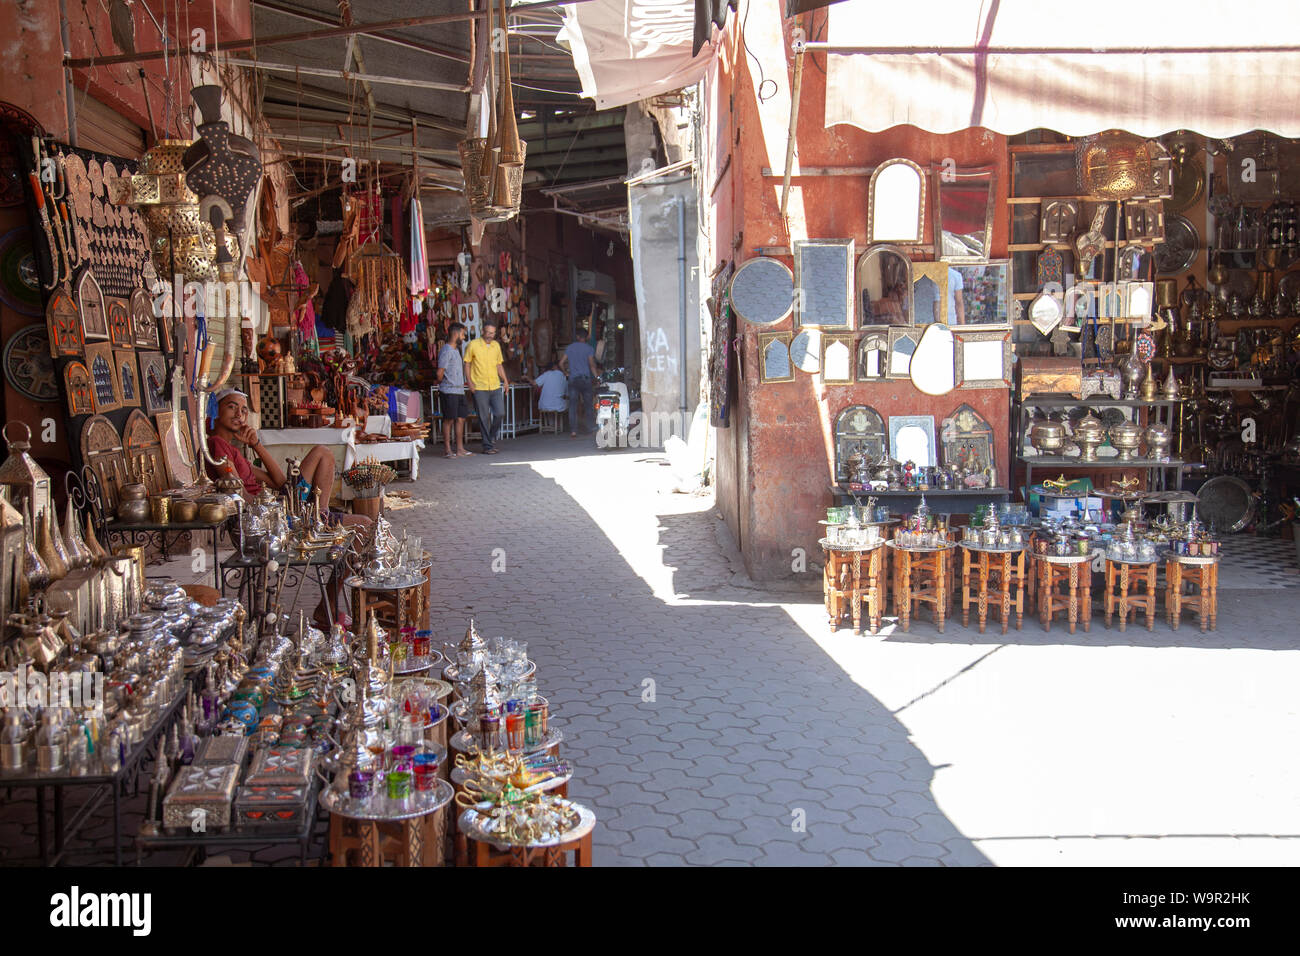 Goods fo Sale in Lanes of Medina Bazaar - Marrakesh, Morocco Stock Photo